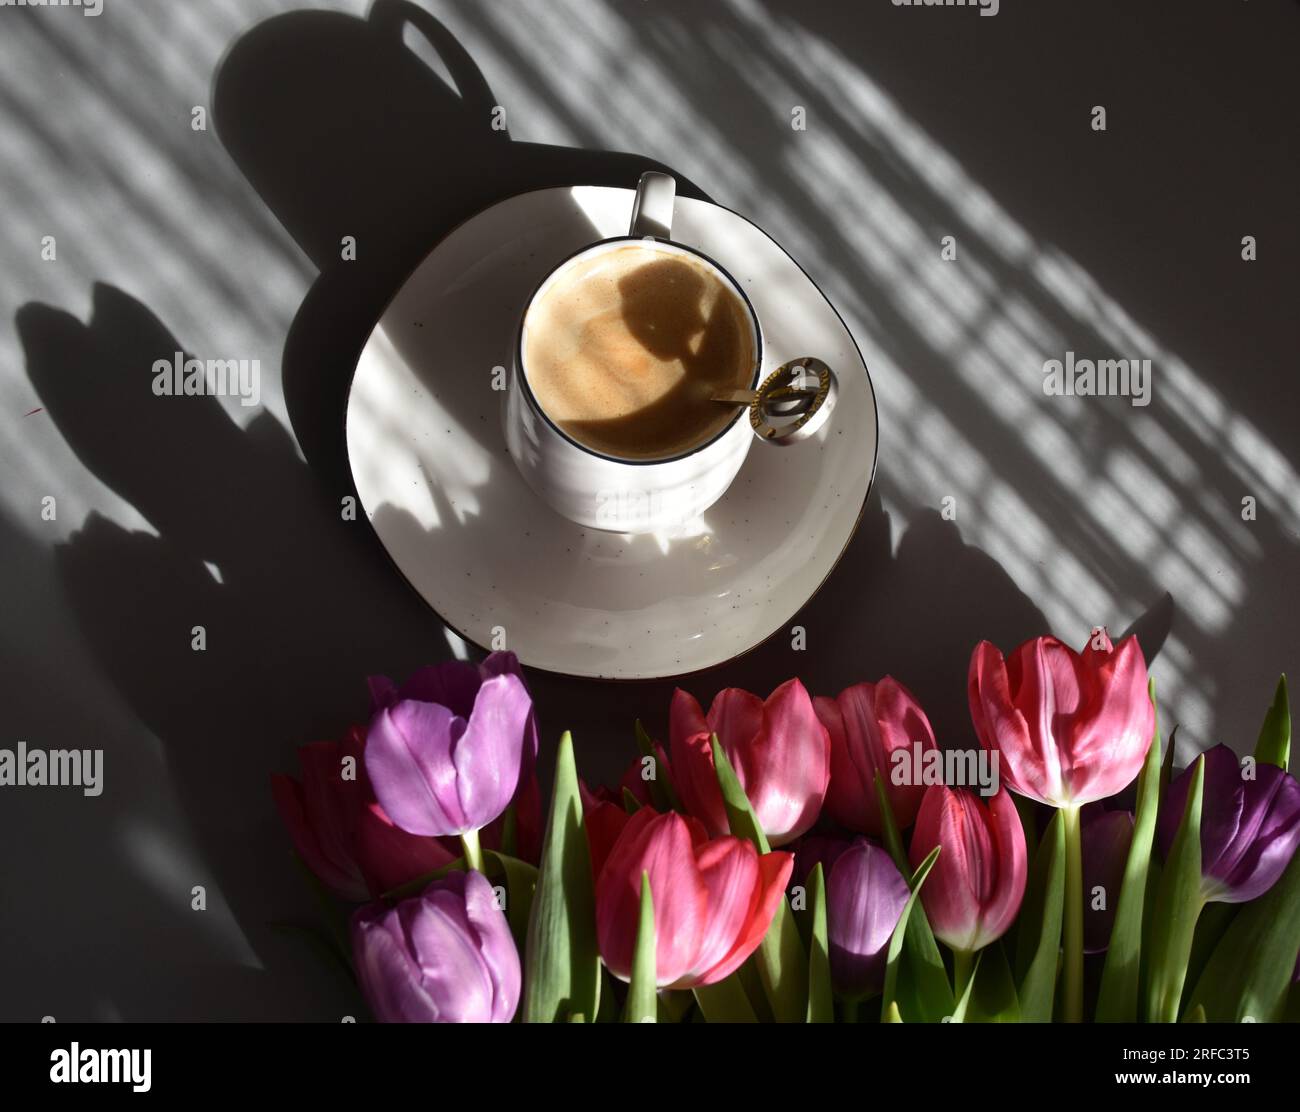 Kaffeebecher, Kaffee und Tulpen, Kaffee, Kaffee-Ästhetik Stockfoto